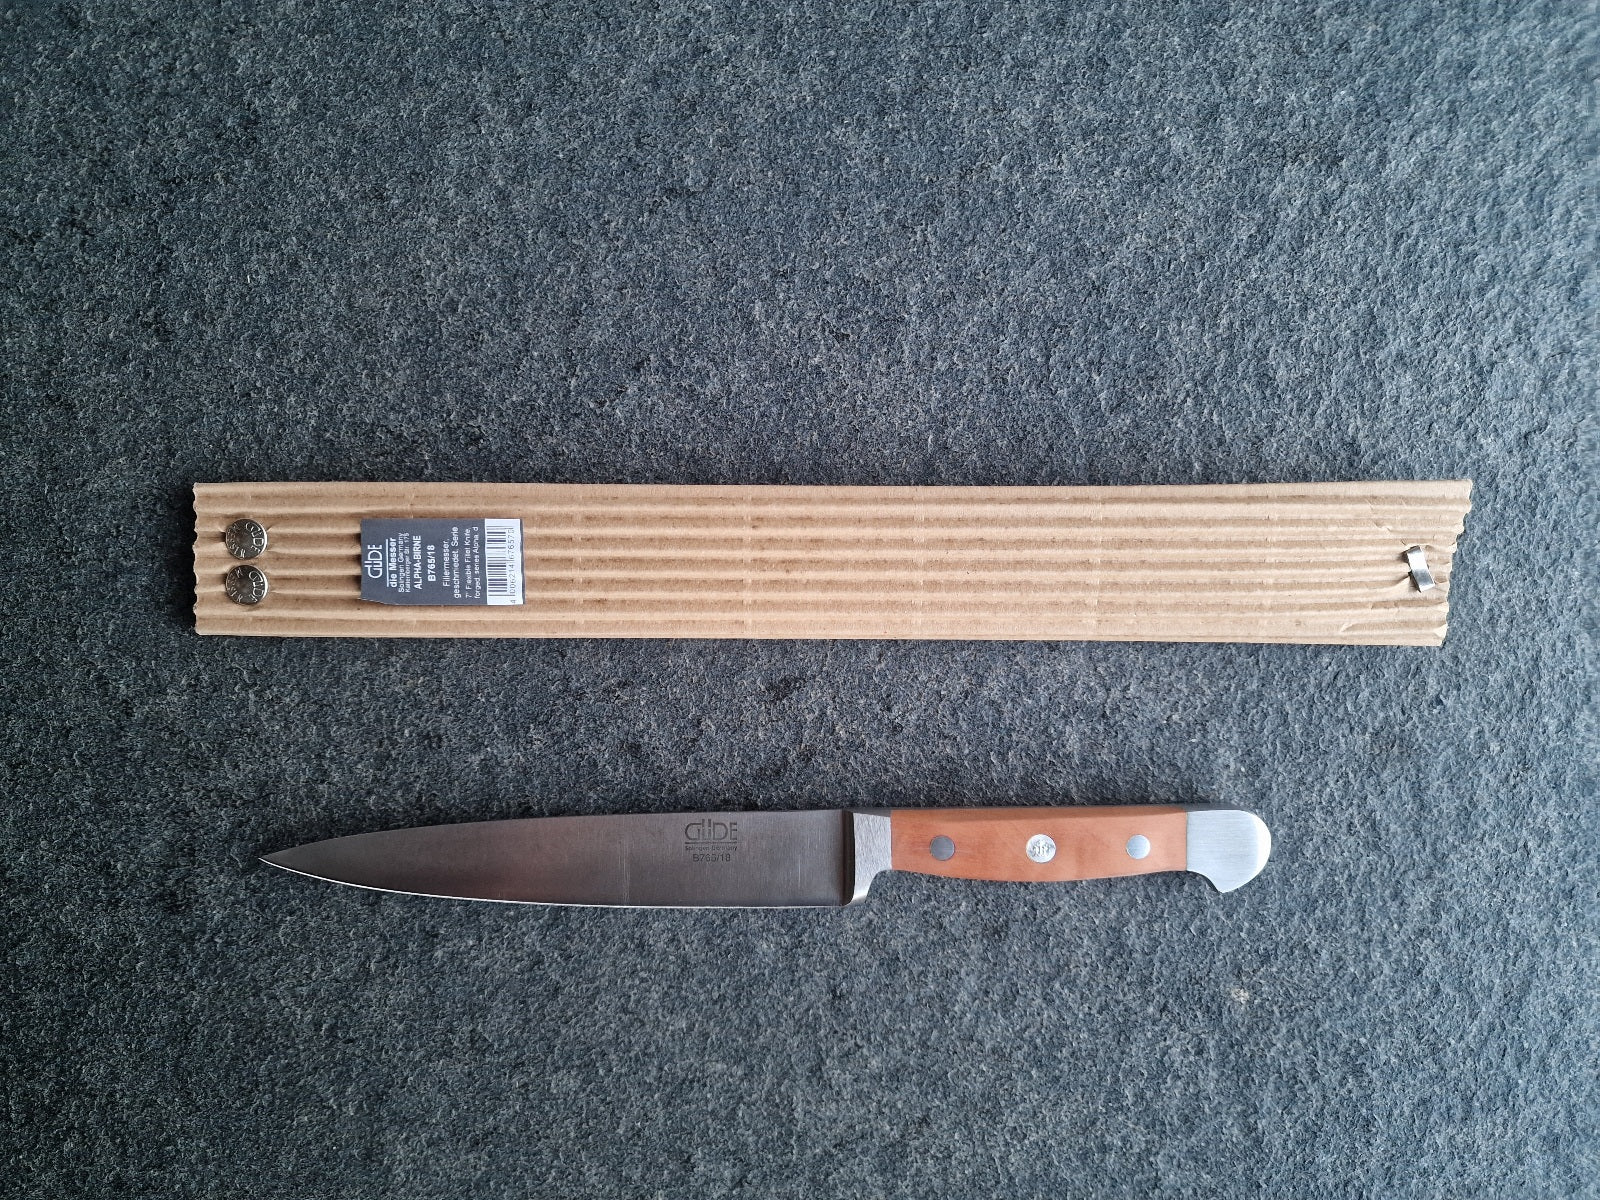 Eine Güde Slicer Messer mit 18 cm Klinge und Wellverpackung.